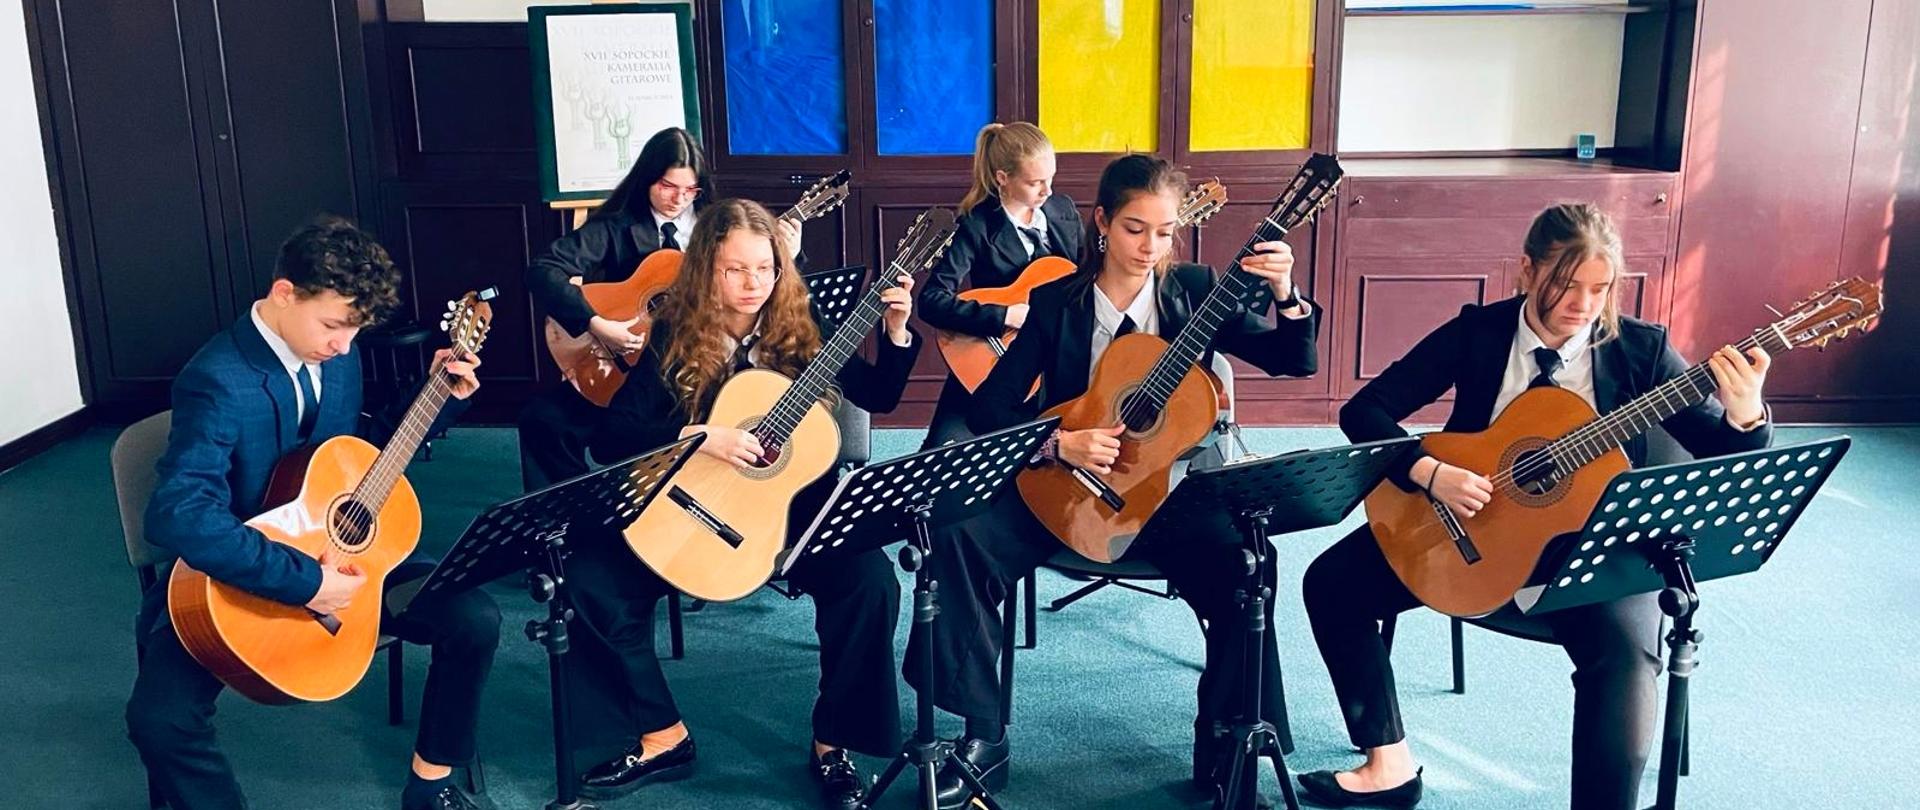 uczniowie grający na gitarach